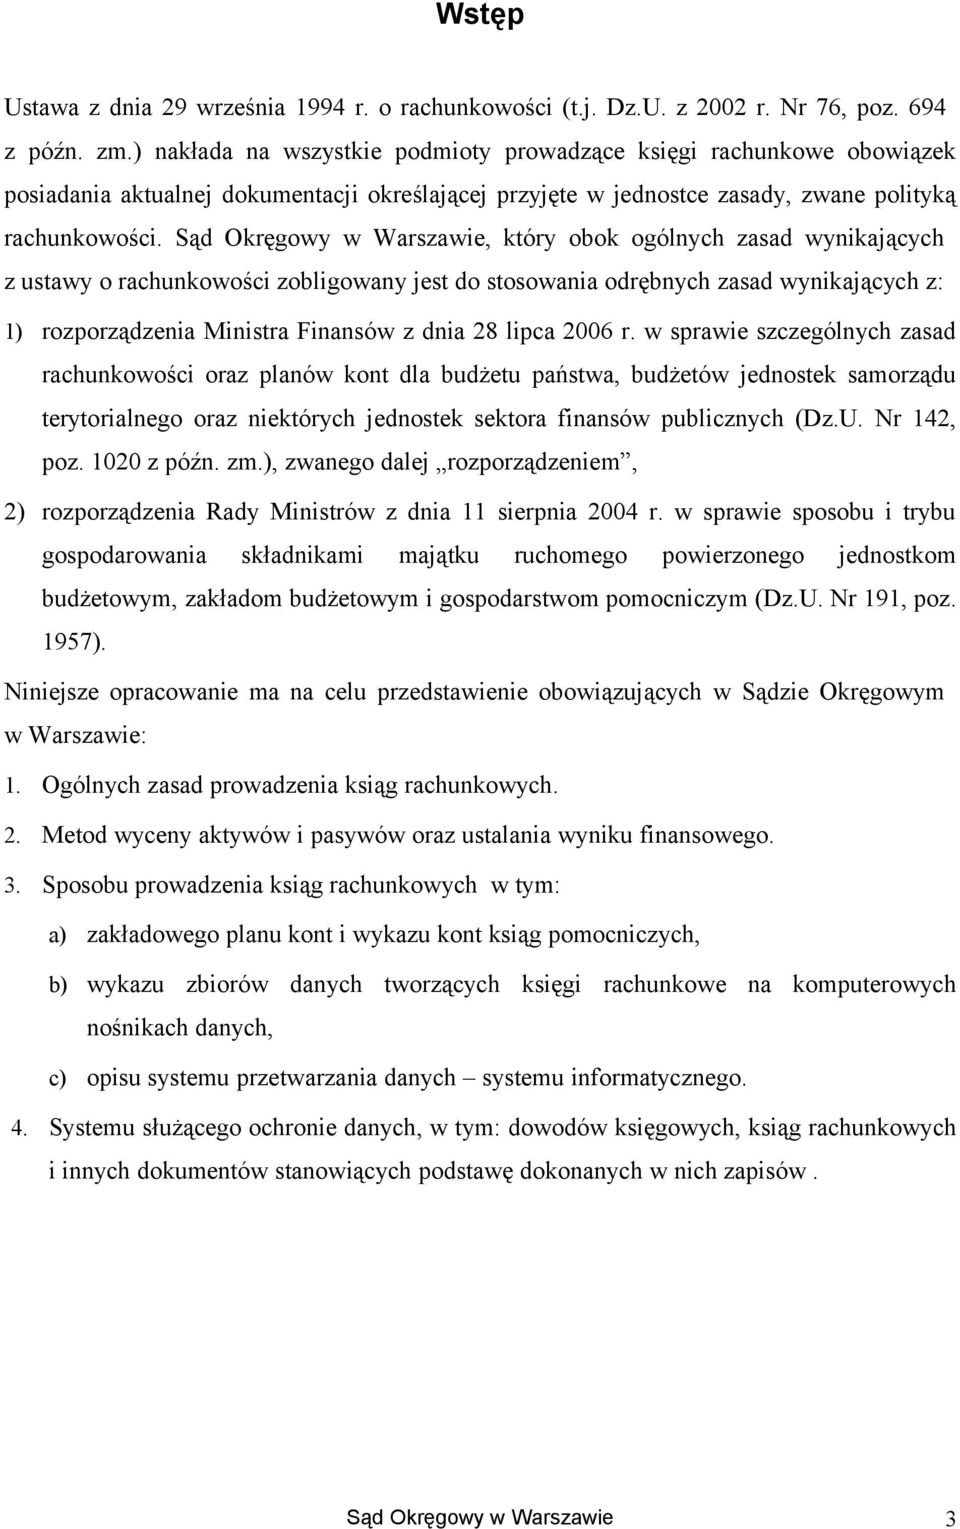 Sąd Okręgwy w Warszawie, który bk gólnych zasad wynikających z ustawy rachunkwści zbligwany jest d stswania drębnych zasad wynikających z: 1) rzprządzenia Ministra Finansów z dnia 28 lipca 2006 r.